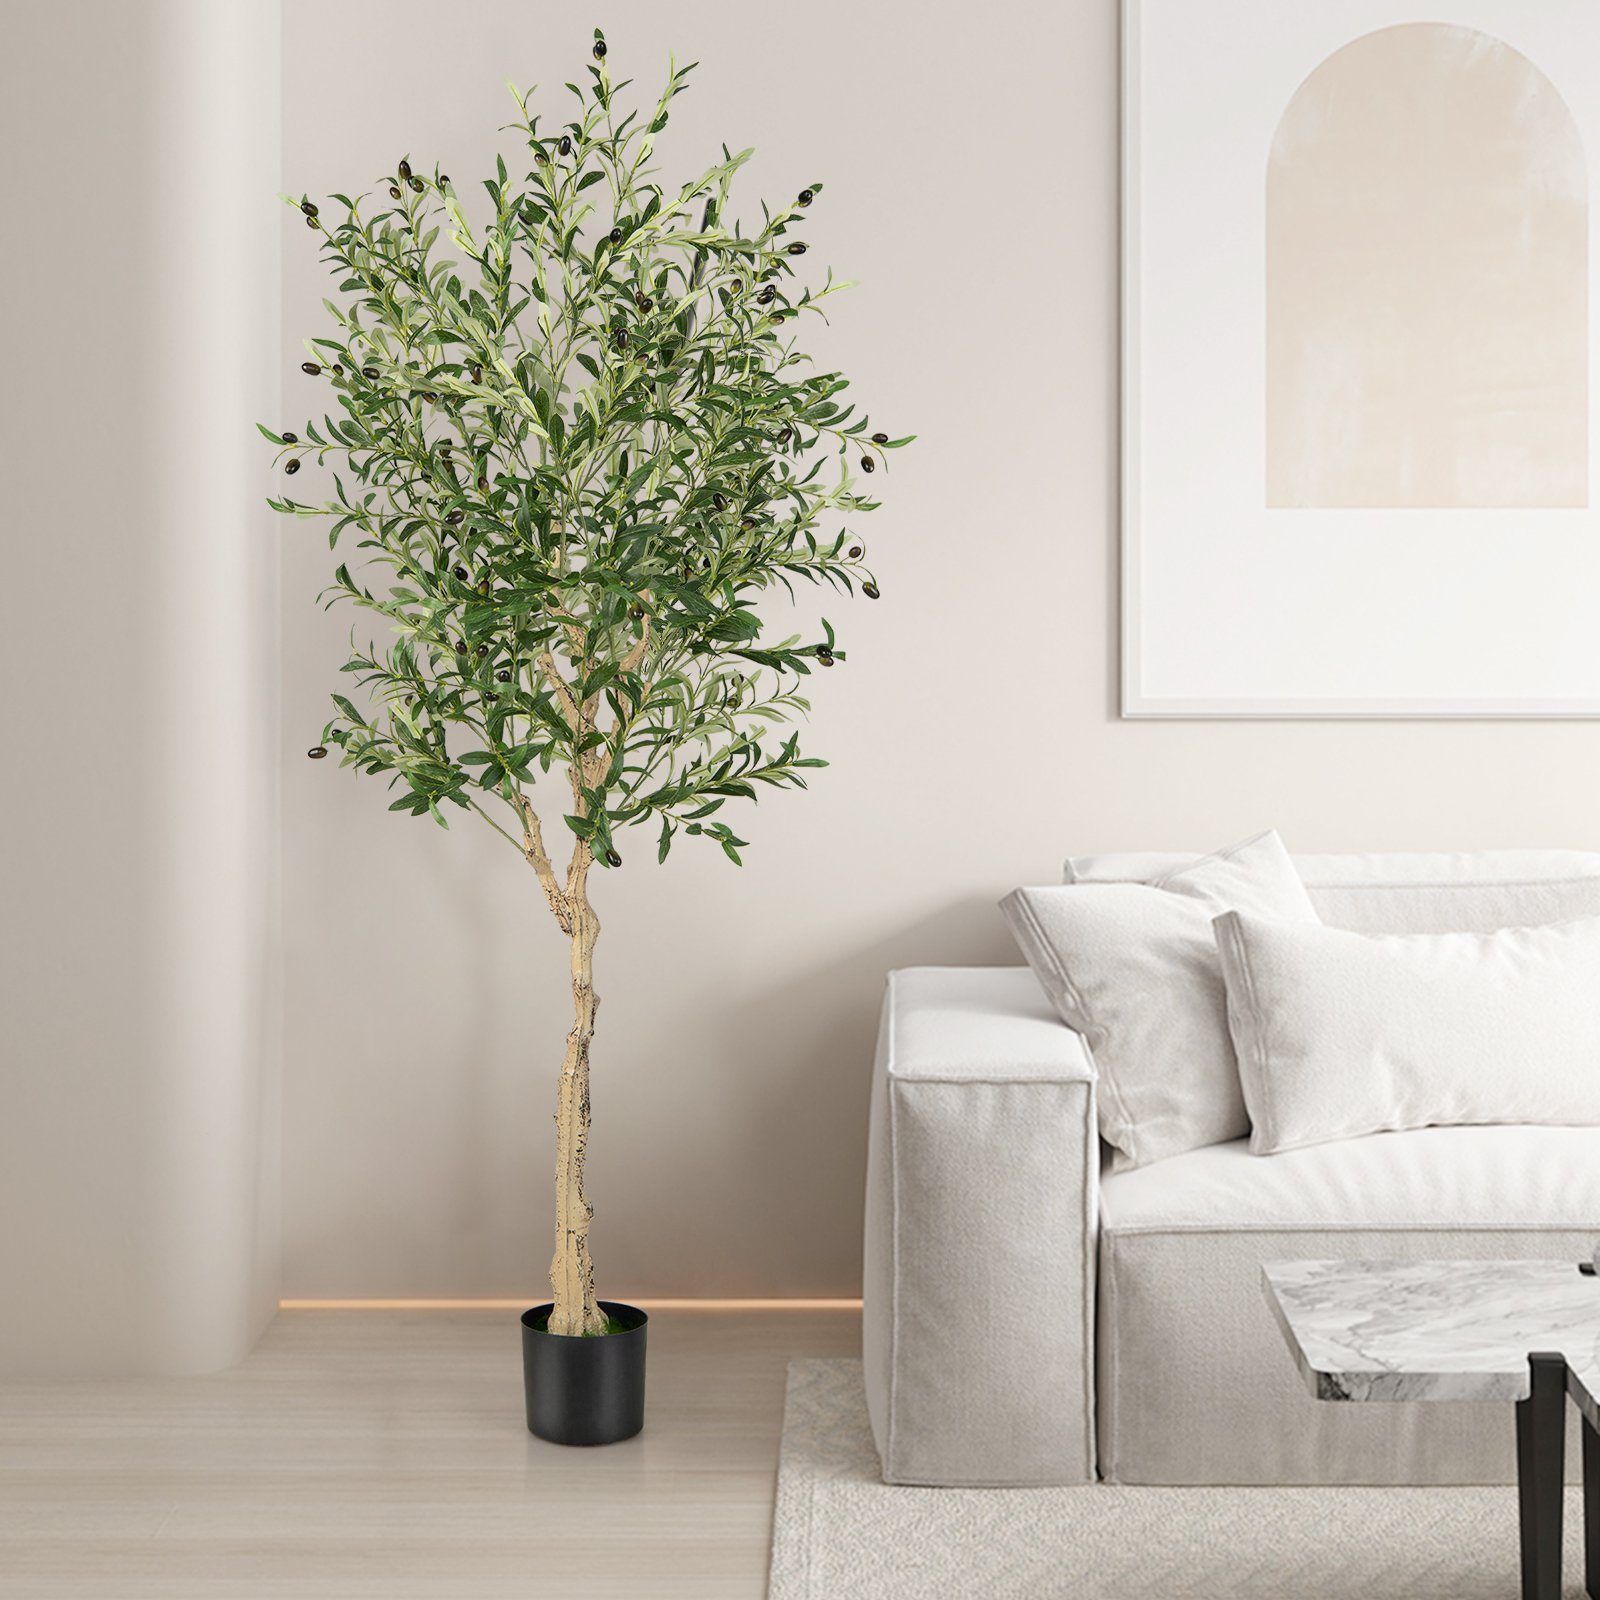 mit Olivenbaum, 182 Kunstpflanze COSTWAY, Höhe 2er, 72 Früchten cm,